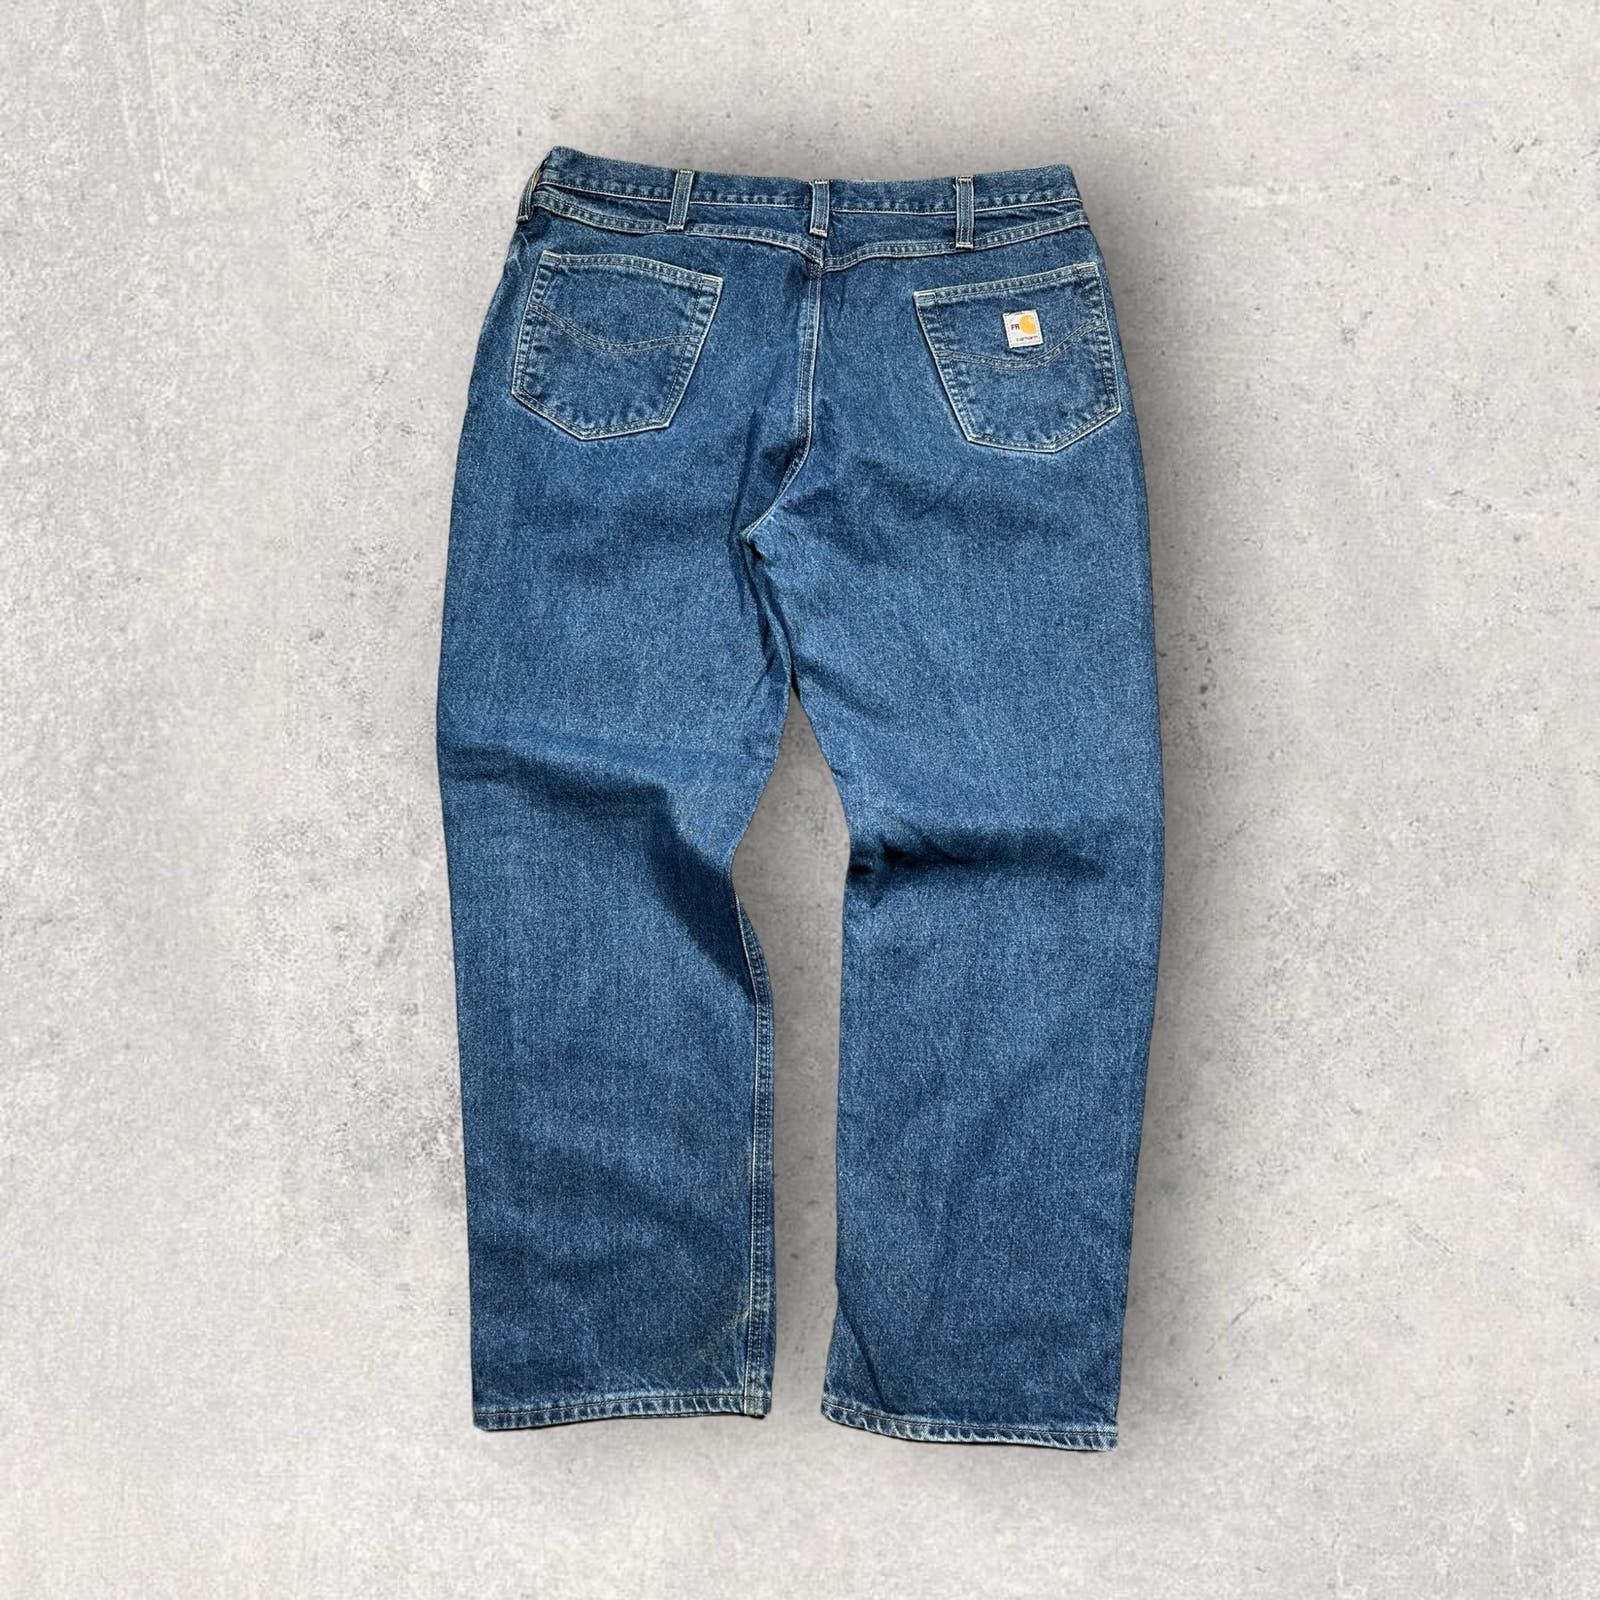 Vintage Vintage Carhartt Baggy Denim Jeans Size 40 Flame Retardant Size US 40 / EU 56 - 1 Preview